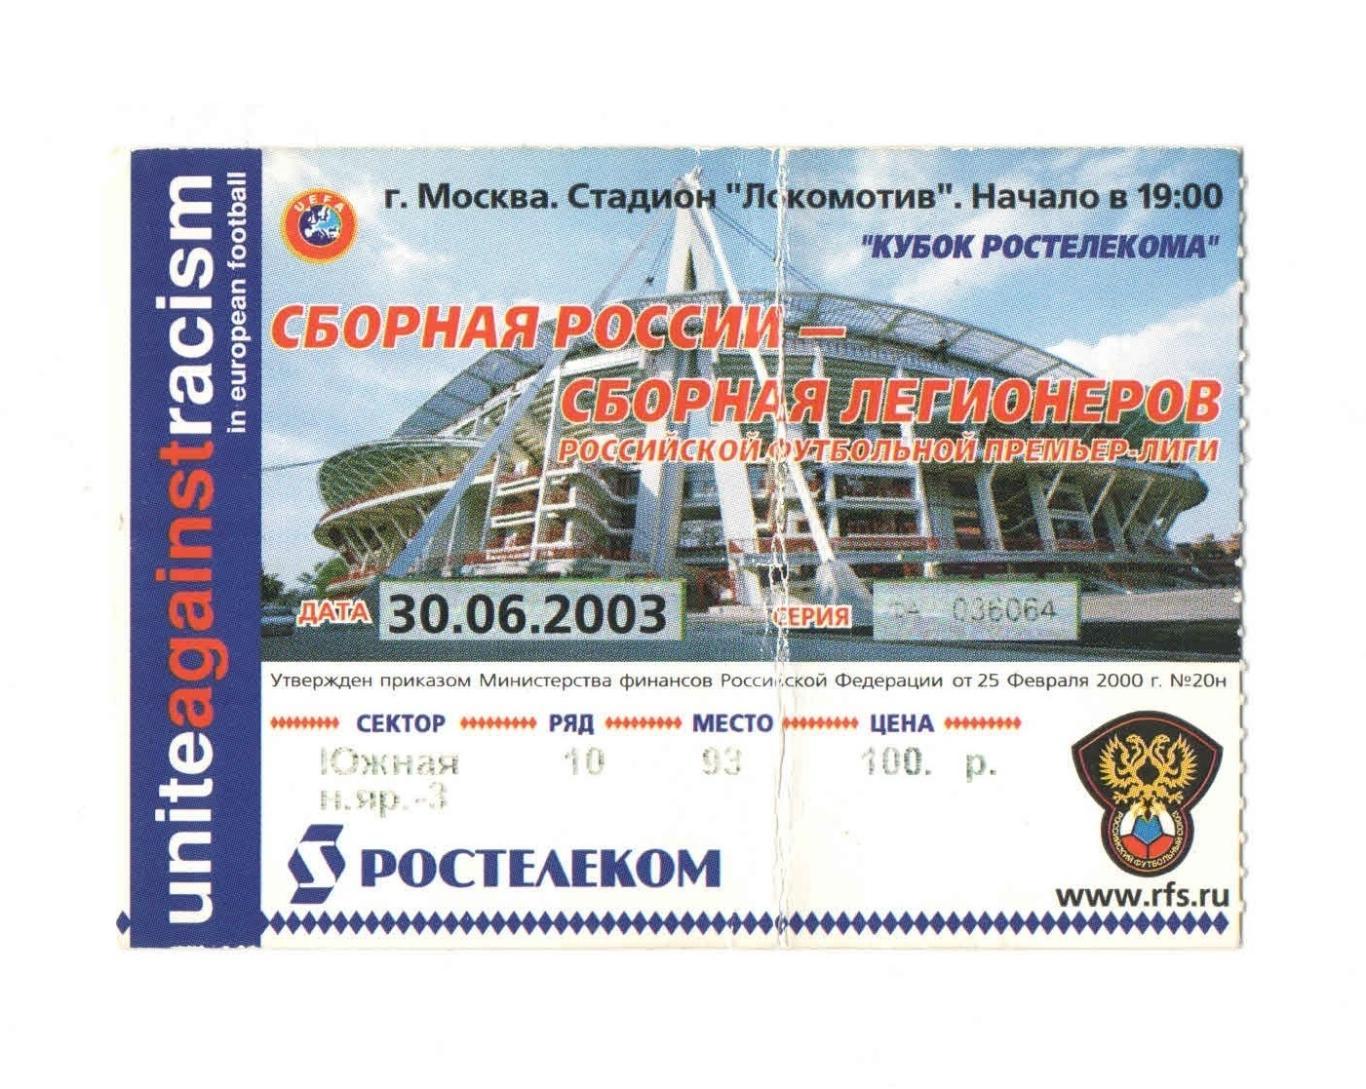 Сборная России - Сборная Легионеров 2003